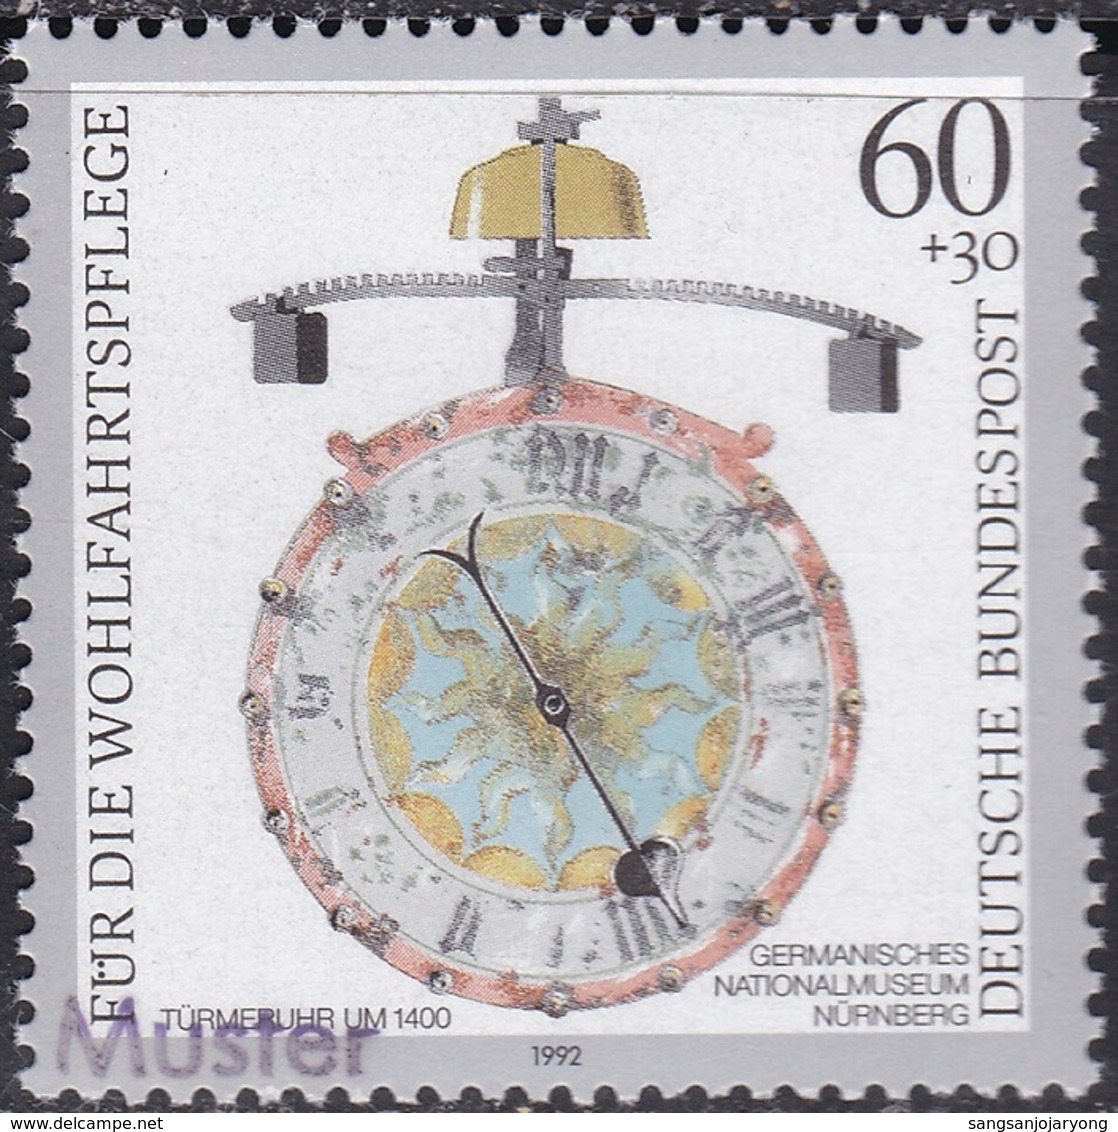 Specimen, Germany ScB734 Antique Clock, Turret (c. 1400), Horloge - Orologeria